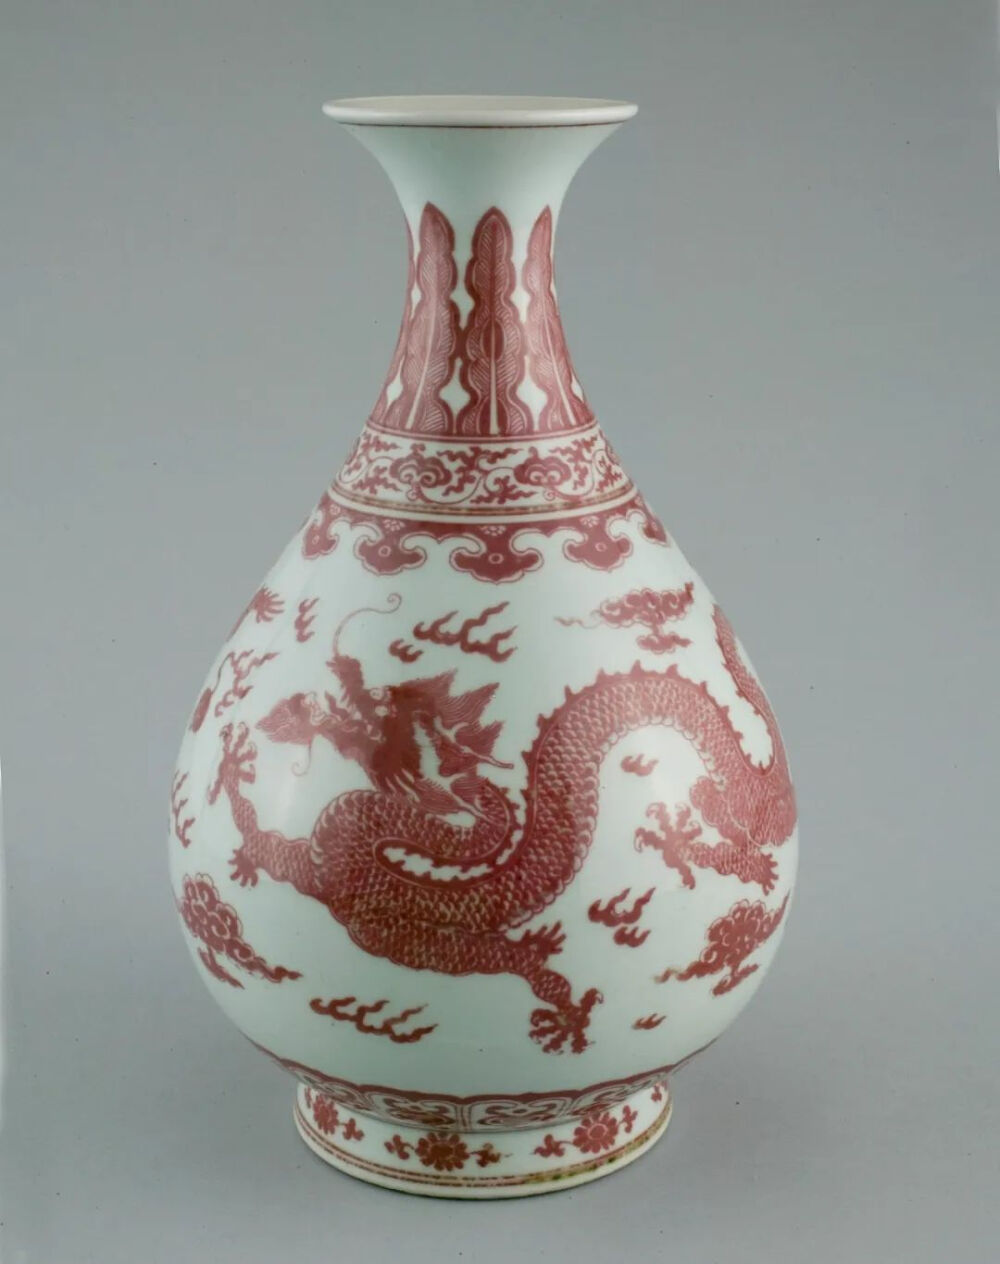 乾隆款釉里红云龙戏珠纹玉壶春瓶
清乾隆（公元1736~1795年）
高31cm，直径19cm
美国芝加哥艺术博物馆藏
（1900.1425）
